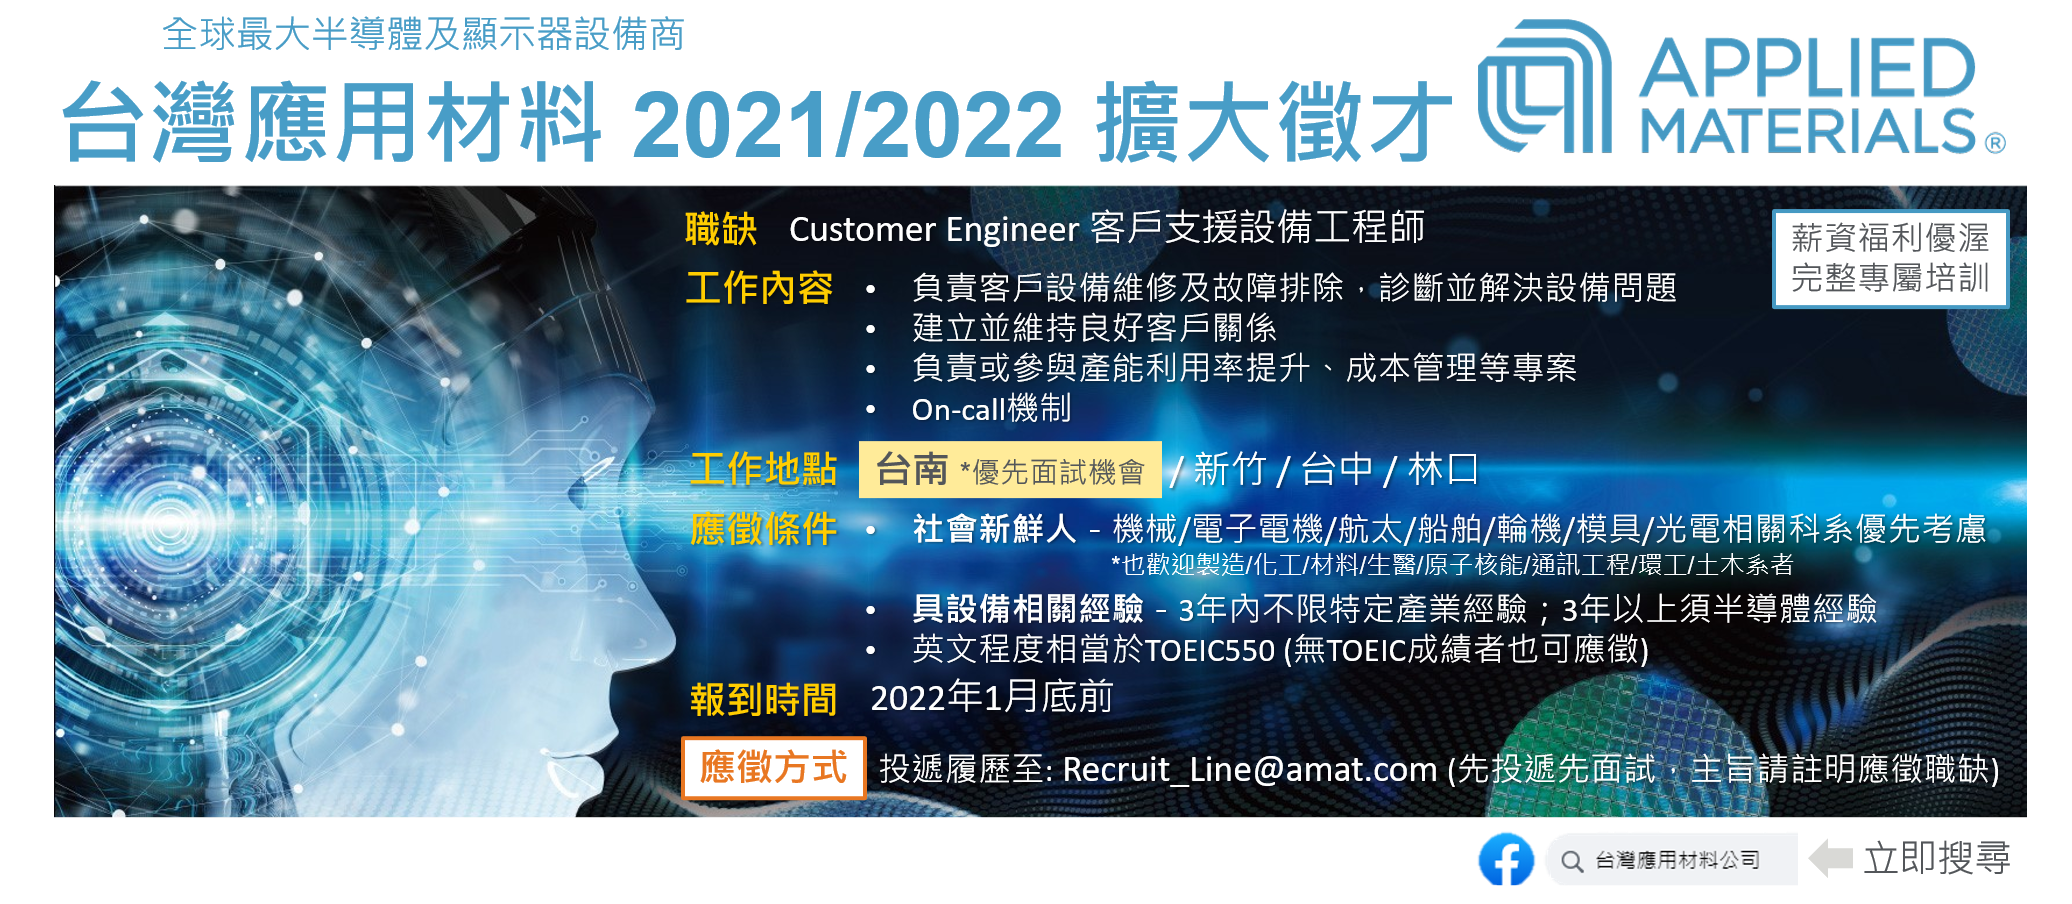 美商應用材料】設備工程師 2021/2022擴大徵才 (2022年1月底前報到)